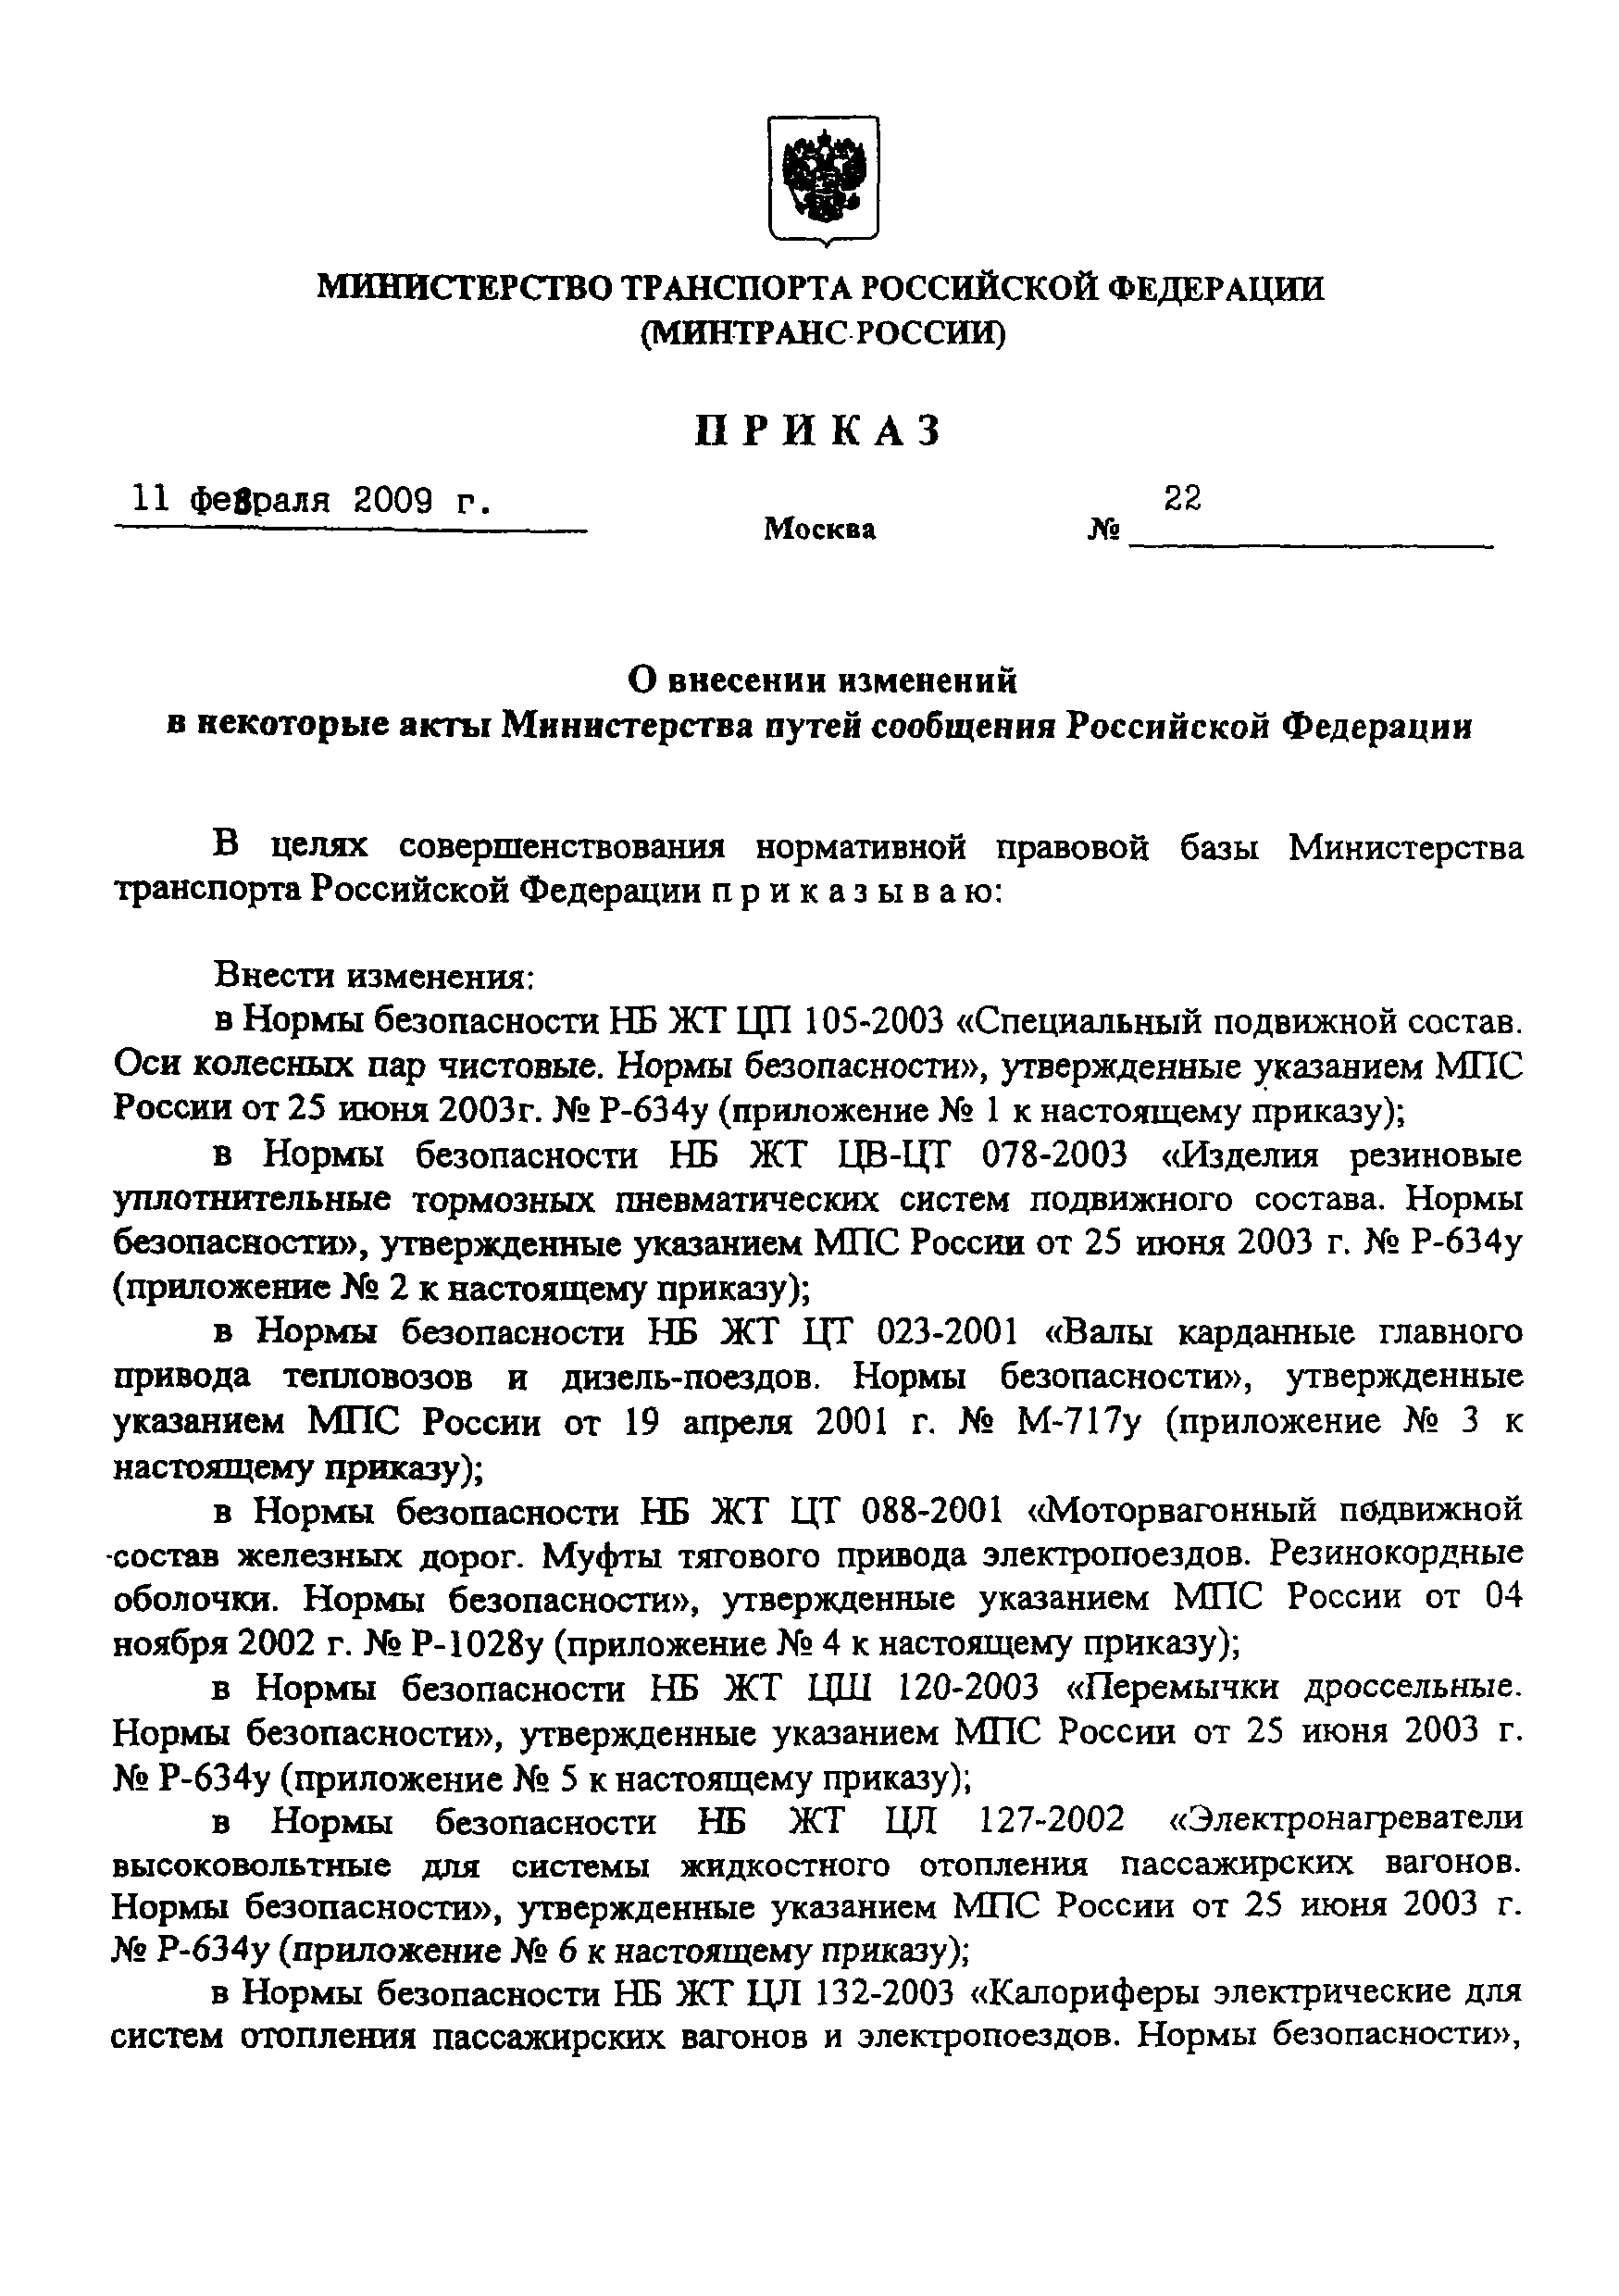 НБ ЖТ ЦТ-ЦВ-ЦЛ 012-2003